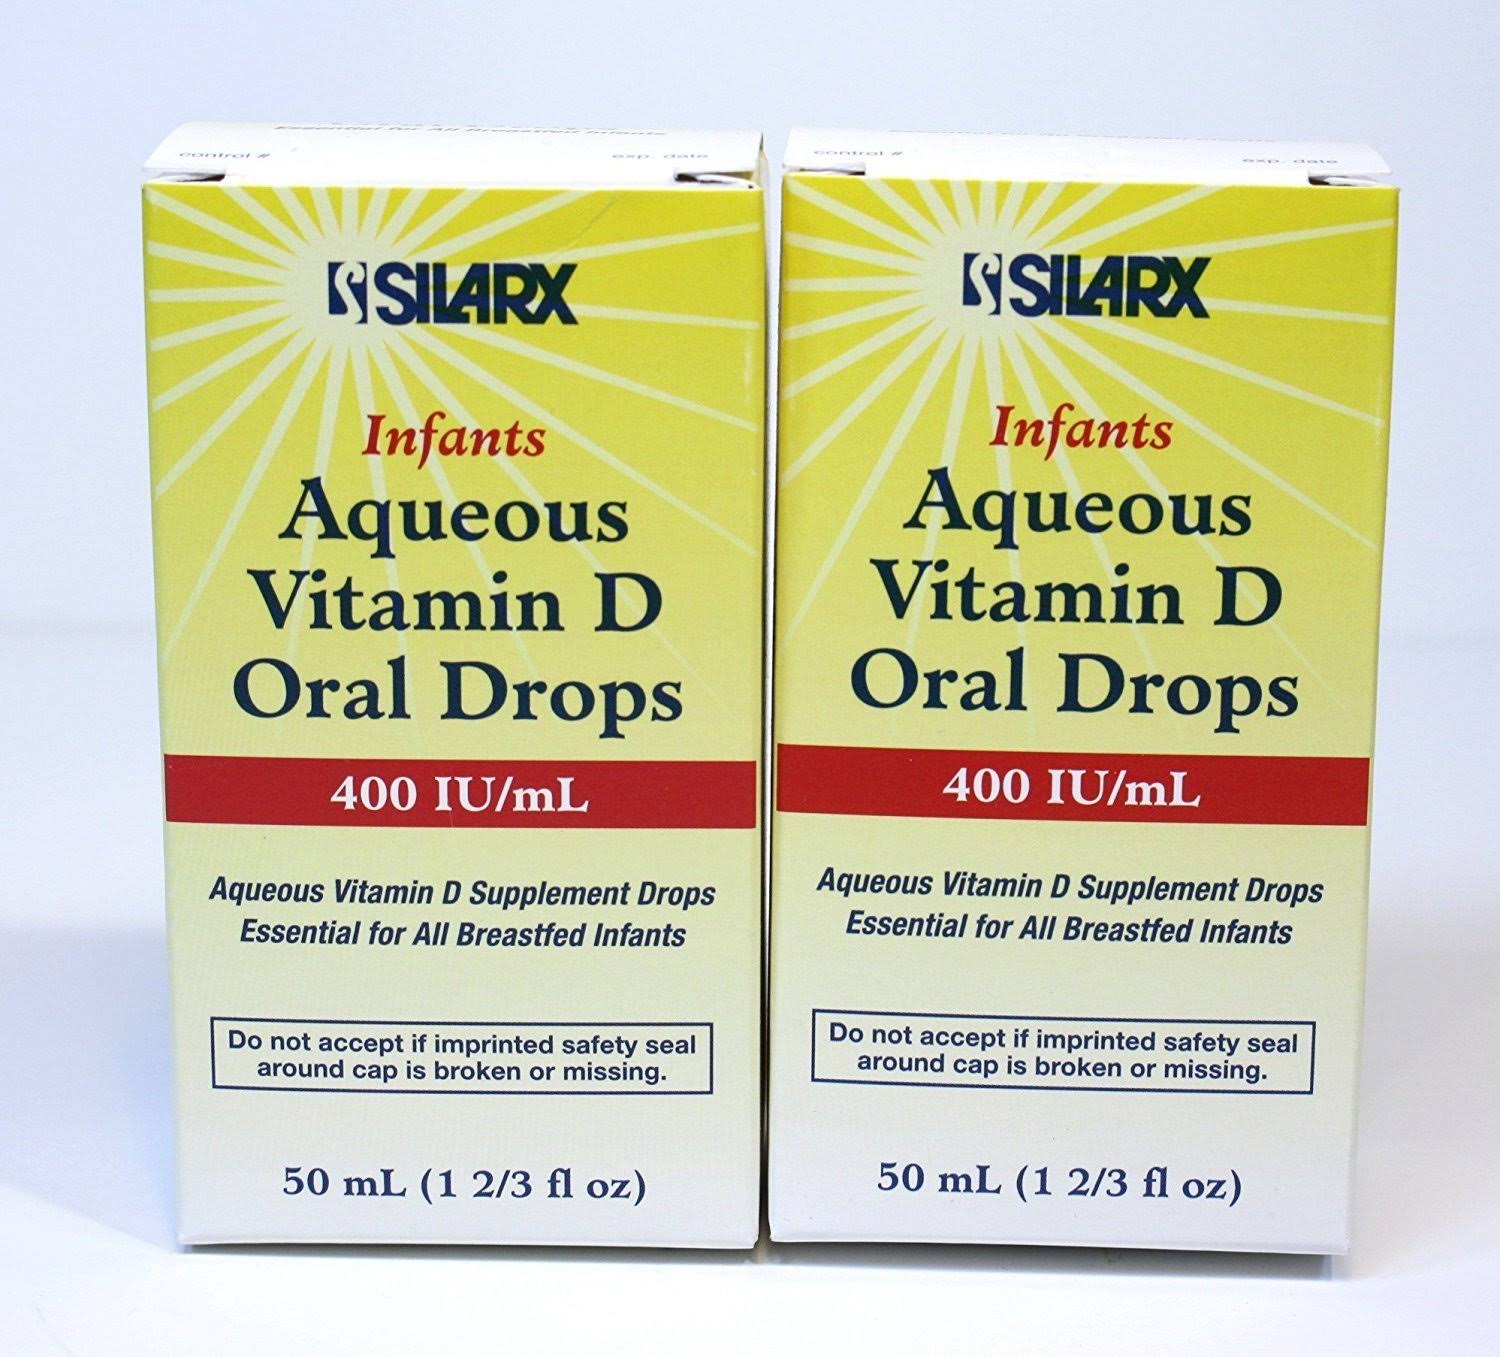 Silarx Infants Aqueous Vitamin D Oral Drops, 50 ml